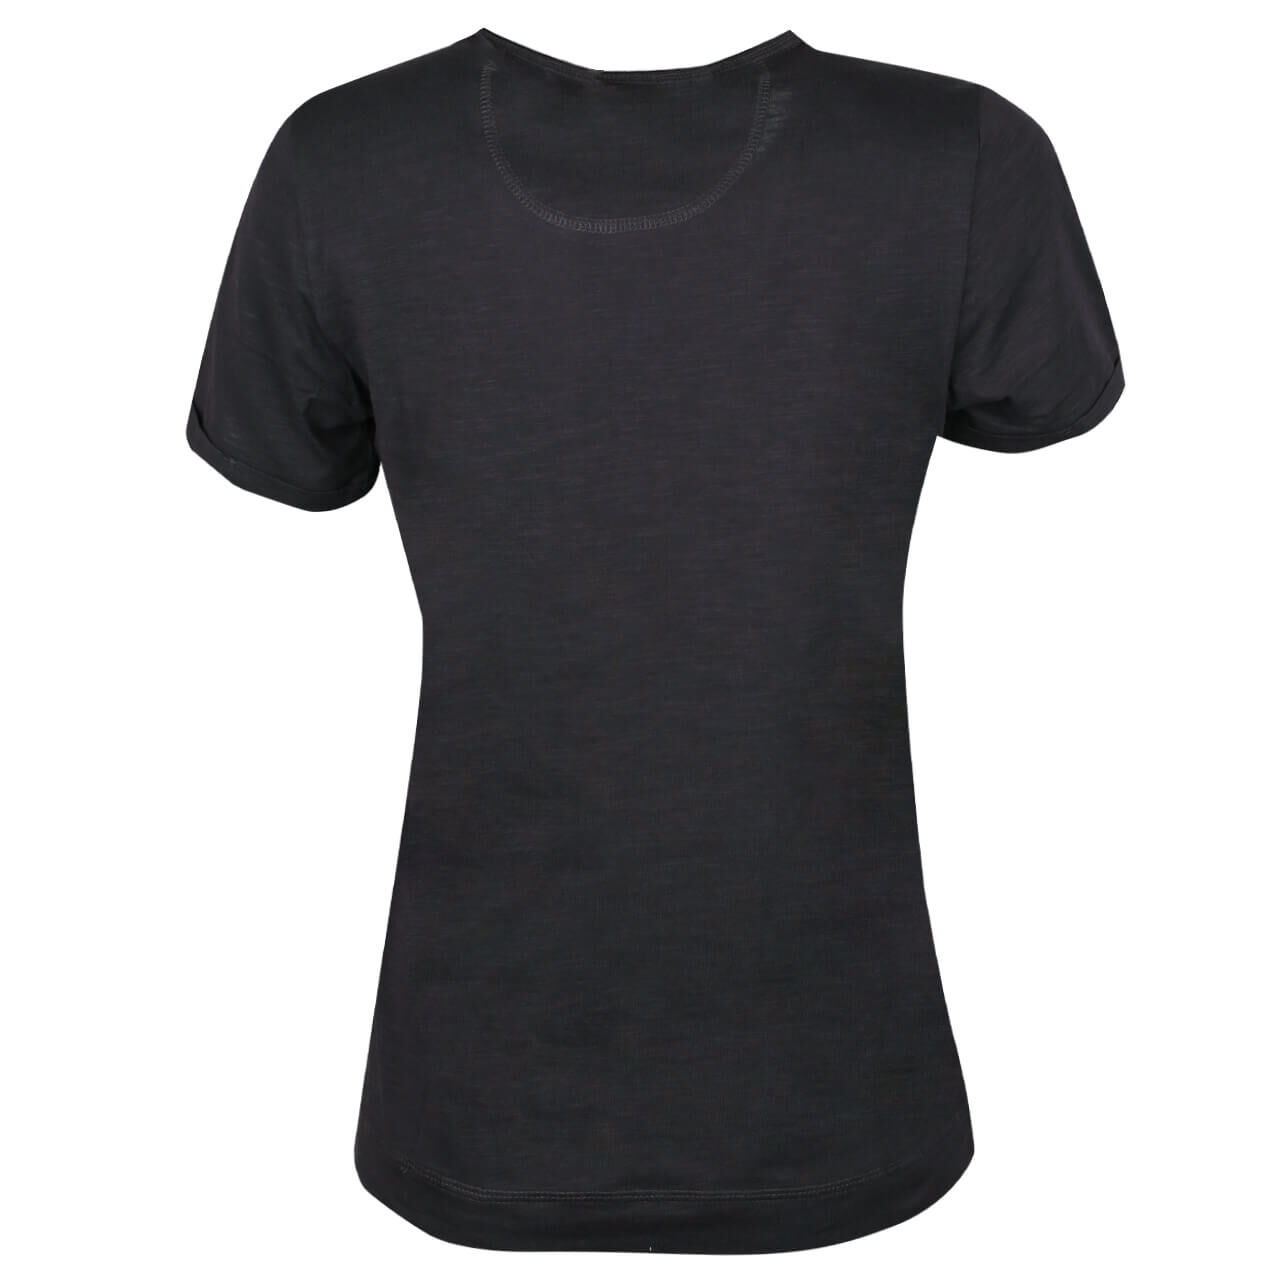 Soquesto T-Shirt für Damen in Dunkelgrau mit Print, FarbNr.: 9804